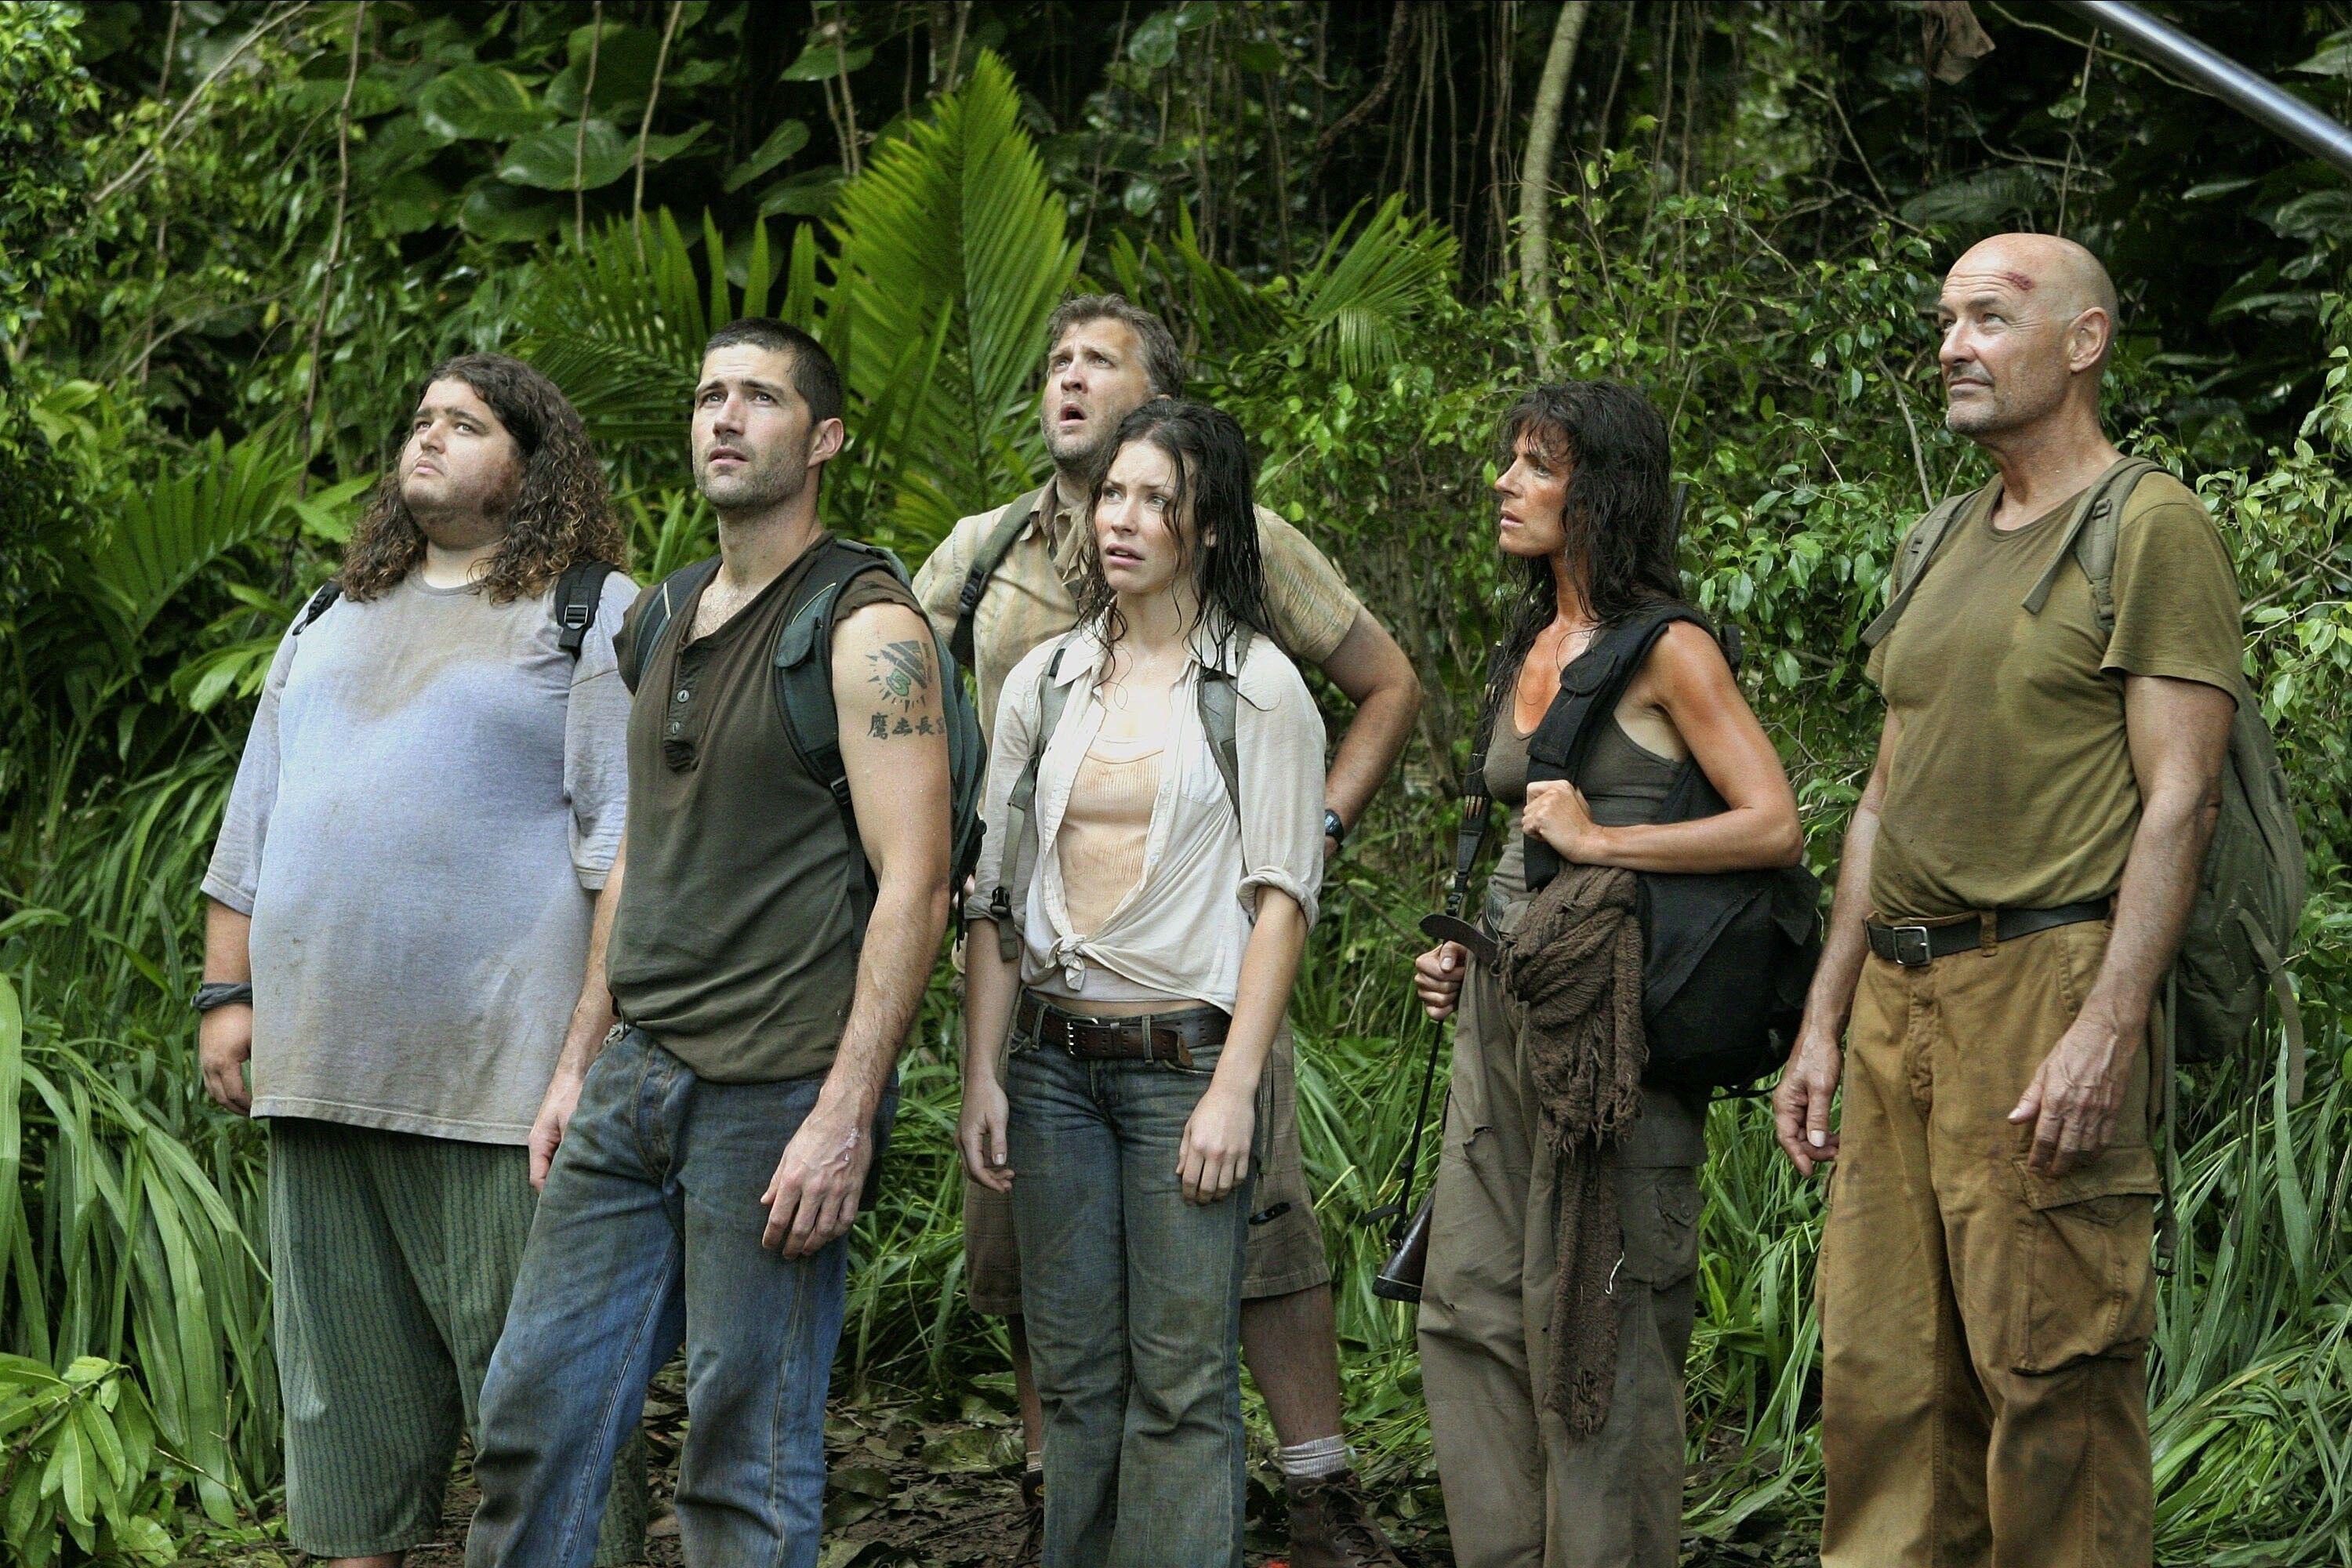 (De gauche à droite) Jorge Garcia comme Hurley, Matthew Fox comme Jack, Daniel Roebuck comme Arzt, Evangeline Lilly comme Kate, Mira Furlan comme Rousseau, Terry O'Quinn comme Locke dans Lost